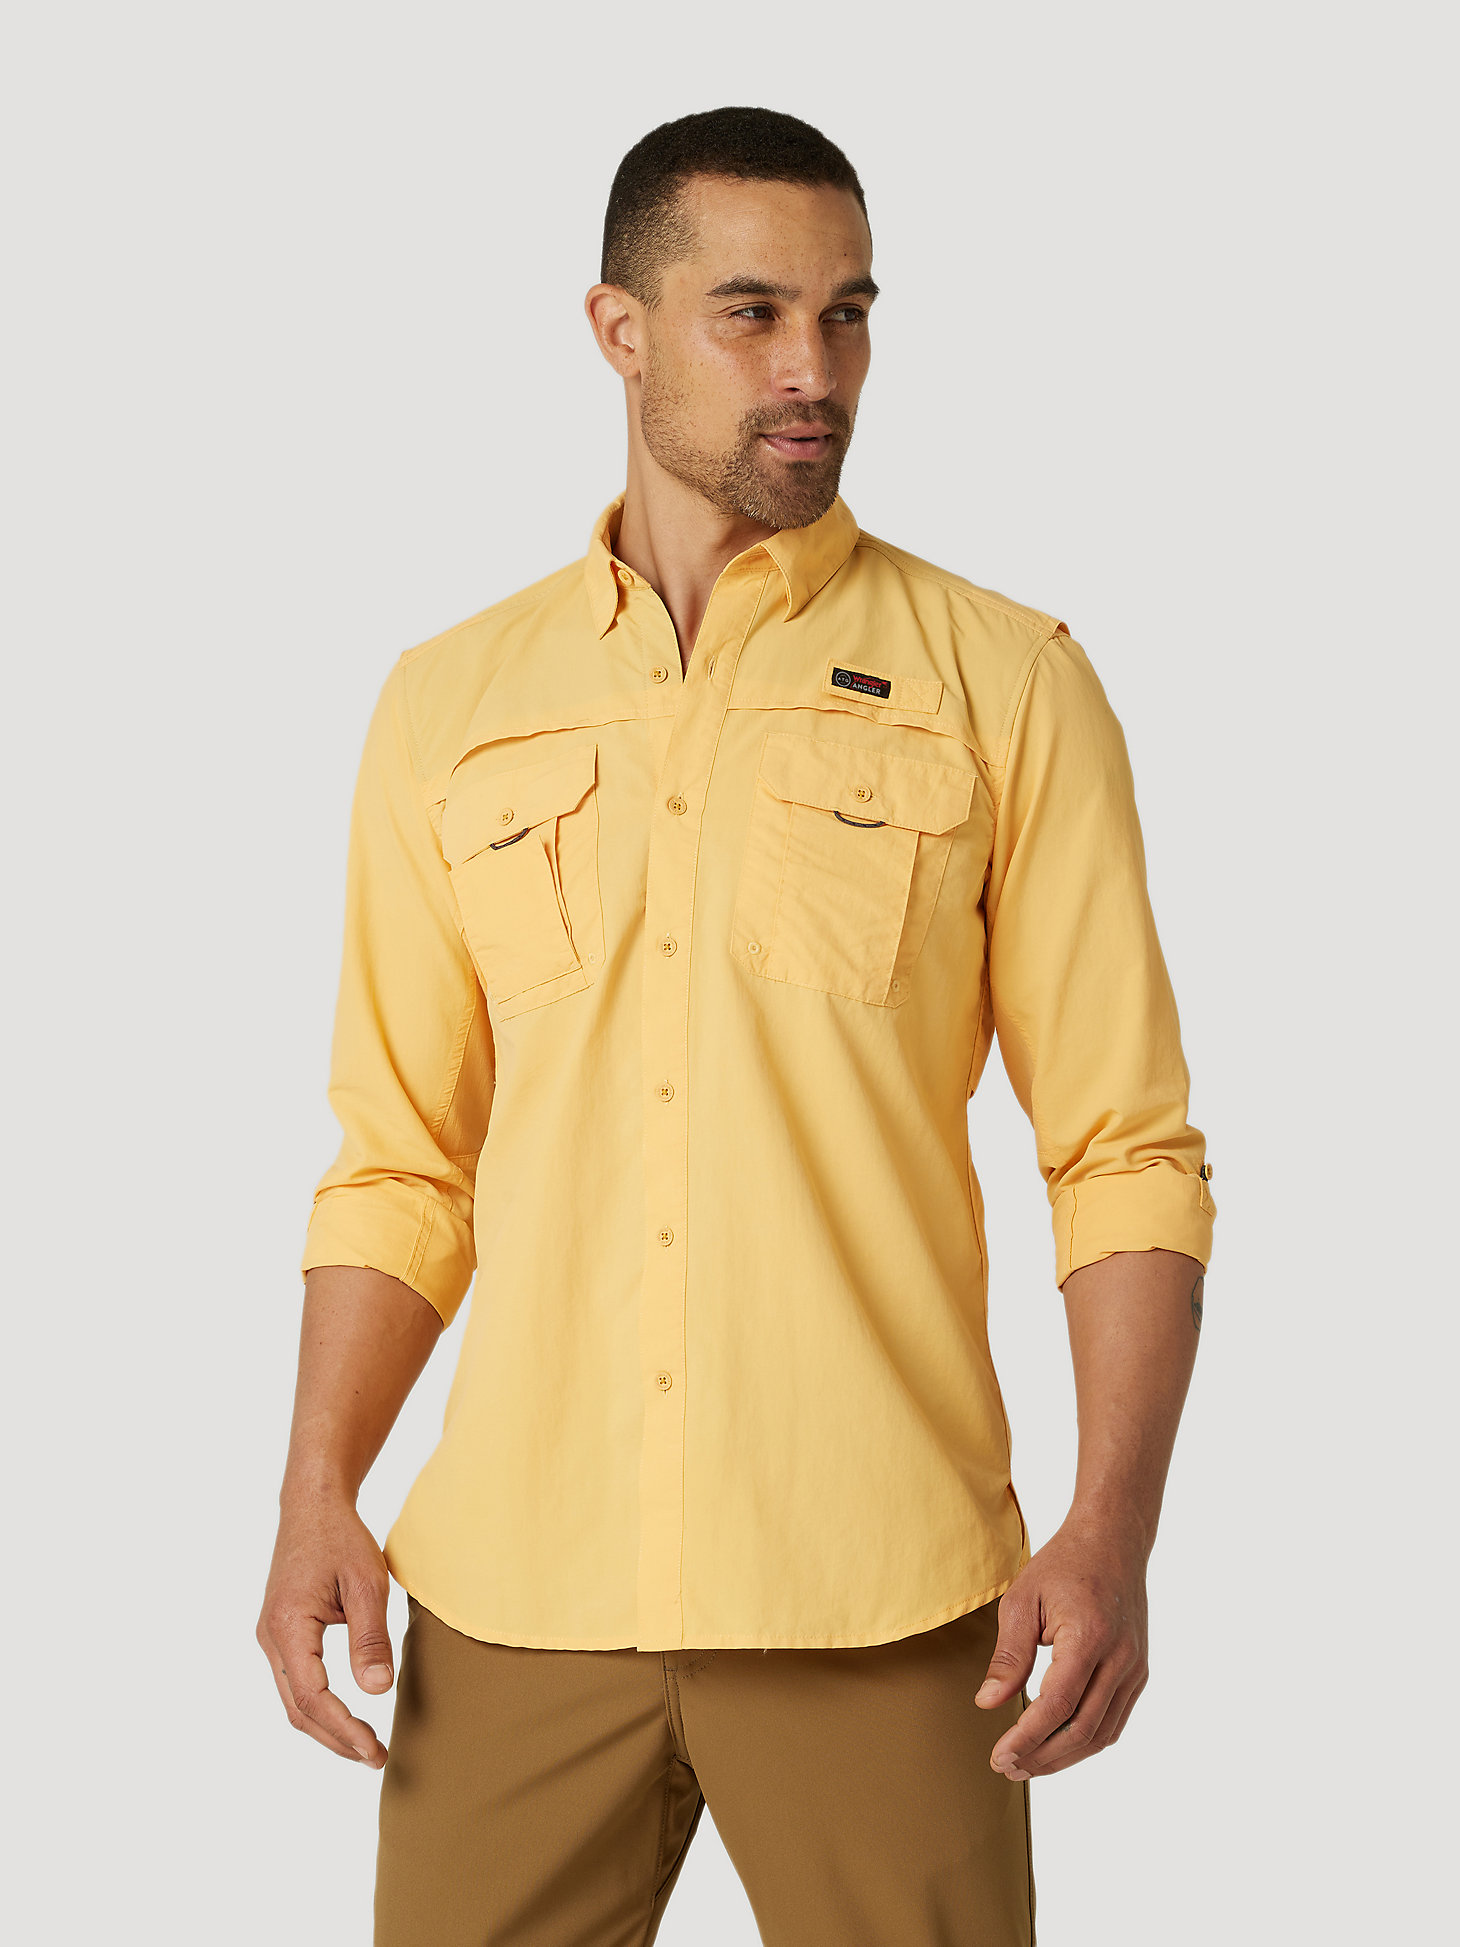 ATG By Wrangler™ Men's Angler Long Sleeve Shirt in Chamois alternative view 2